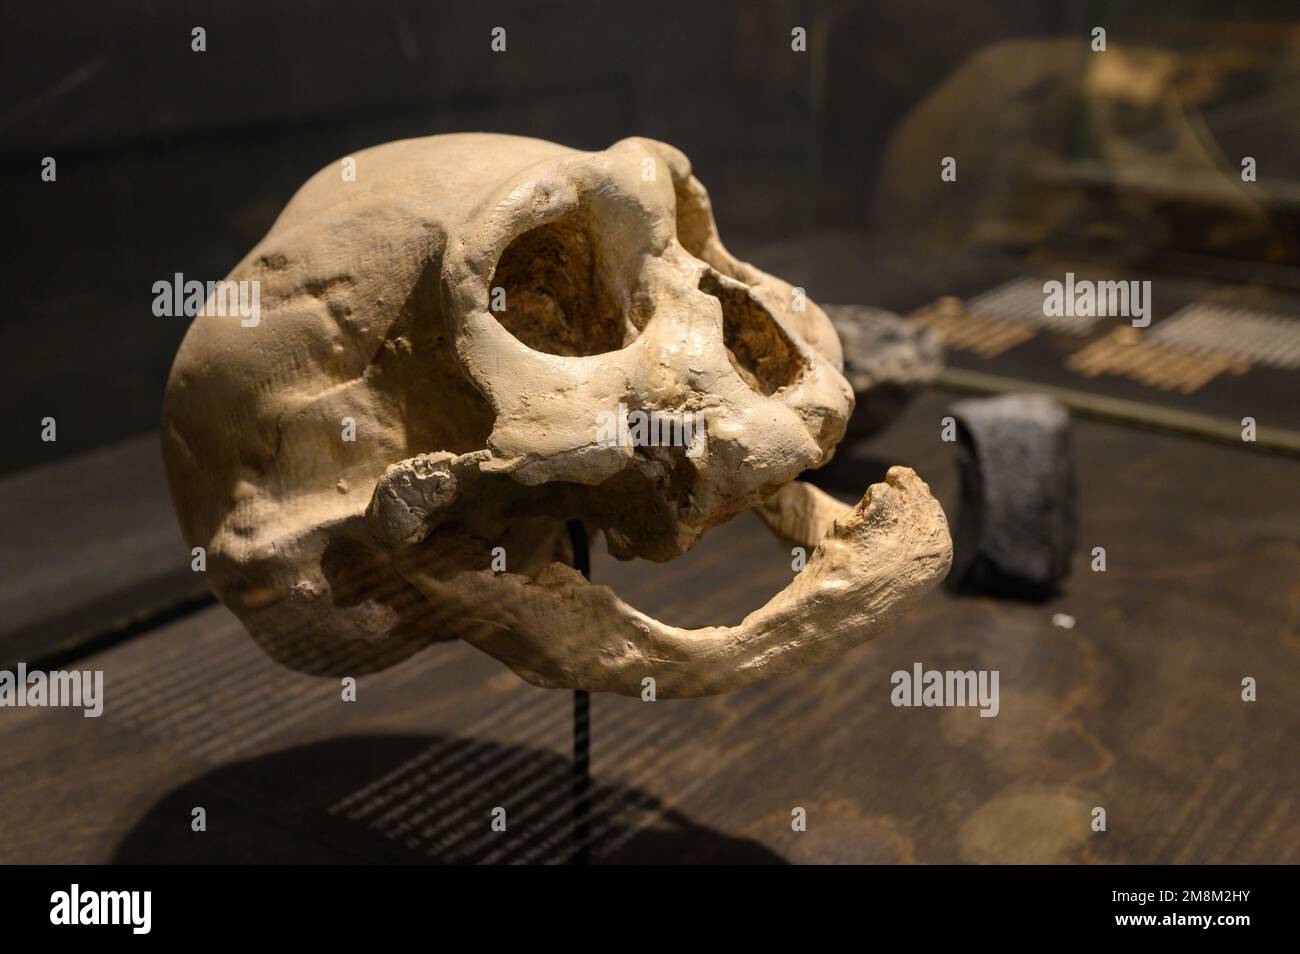 Homo georgicus trovato a Dmanisi, Georgia. Cranio e mandibola inferiore di un vecchio (calchi). In mostra al Museo di Scienze naturali di Bruxelles, Belgio. Foto Stock